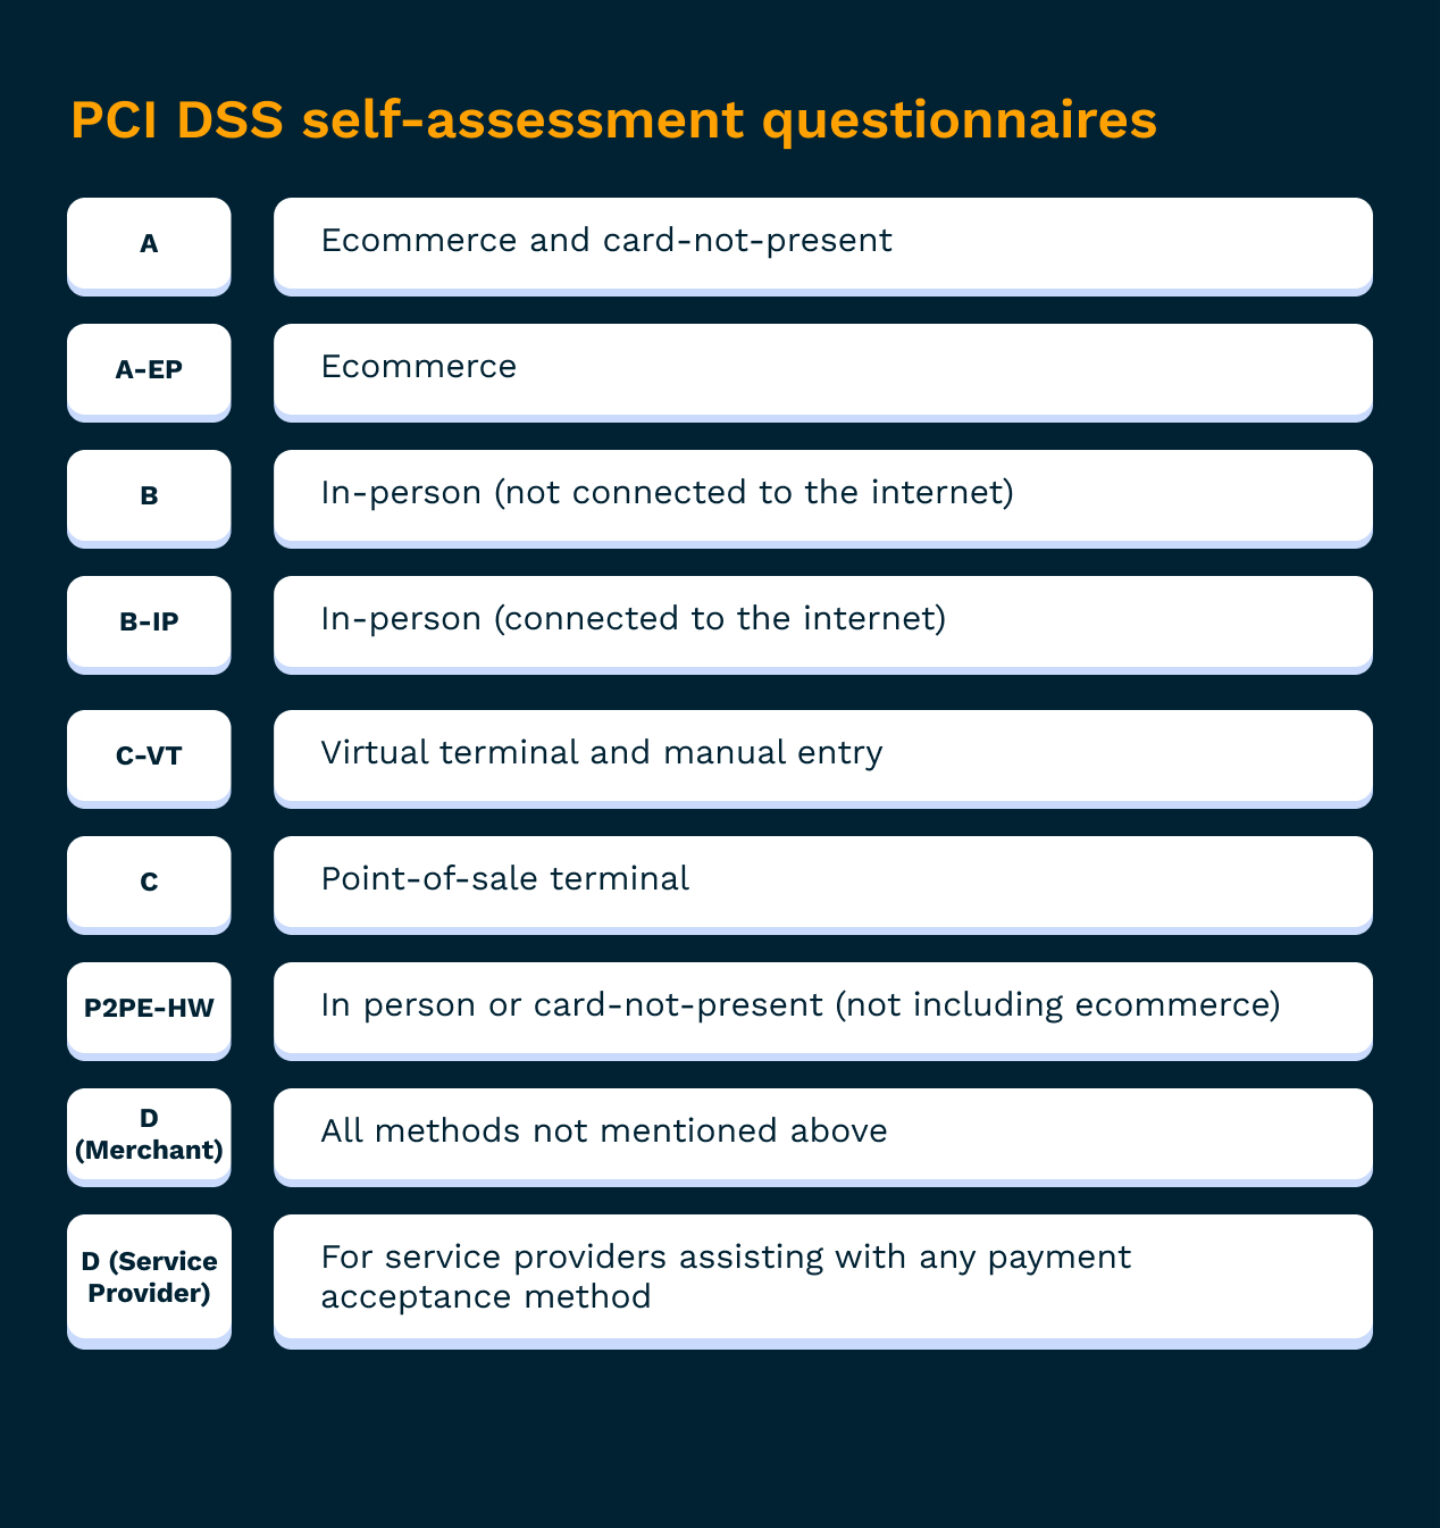 PCI DSS self-assessment questionnaires